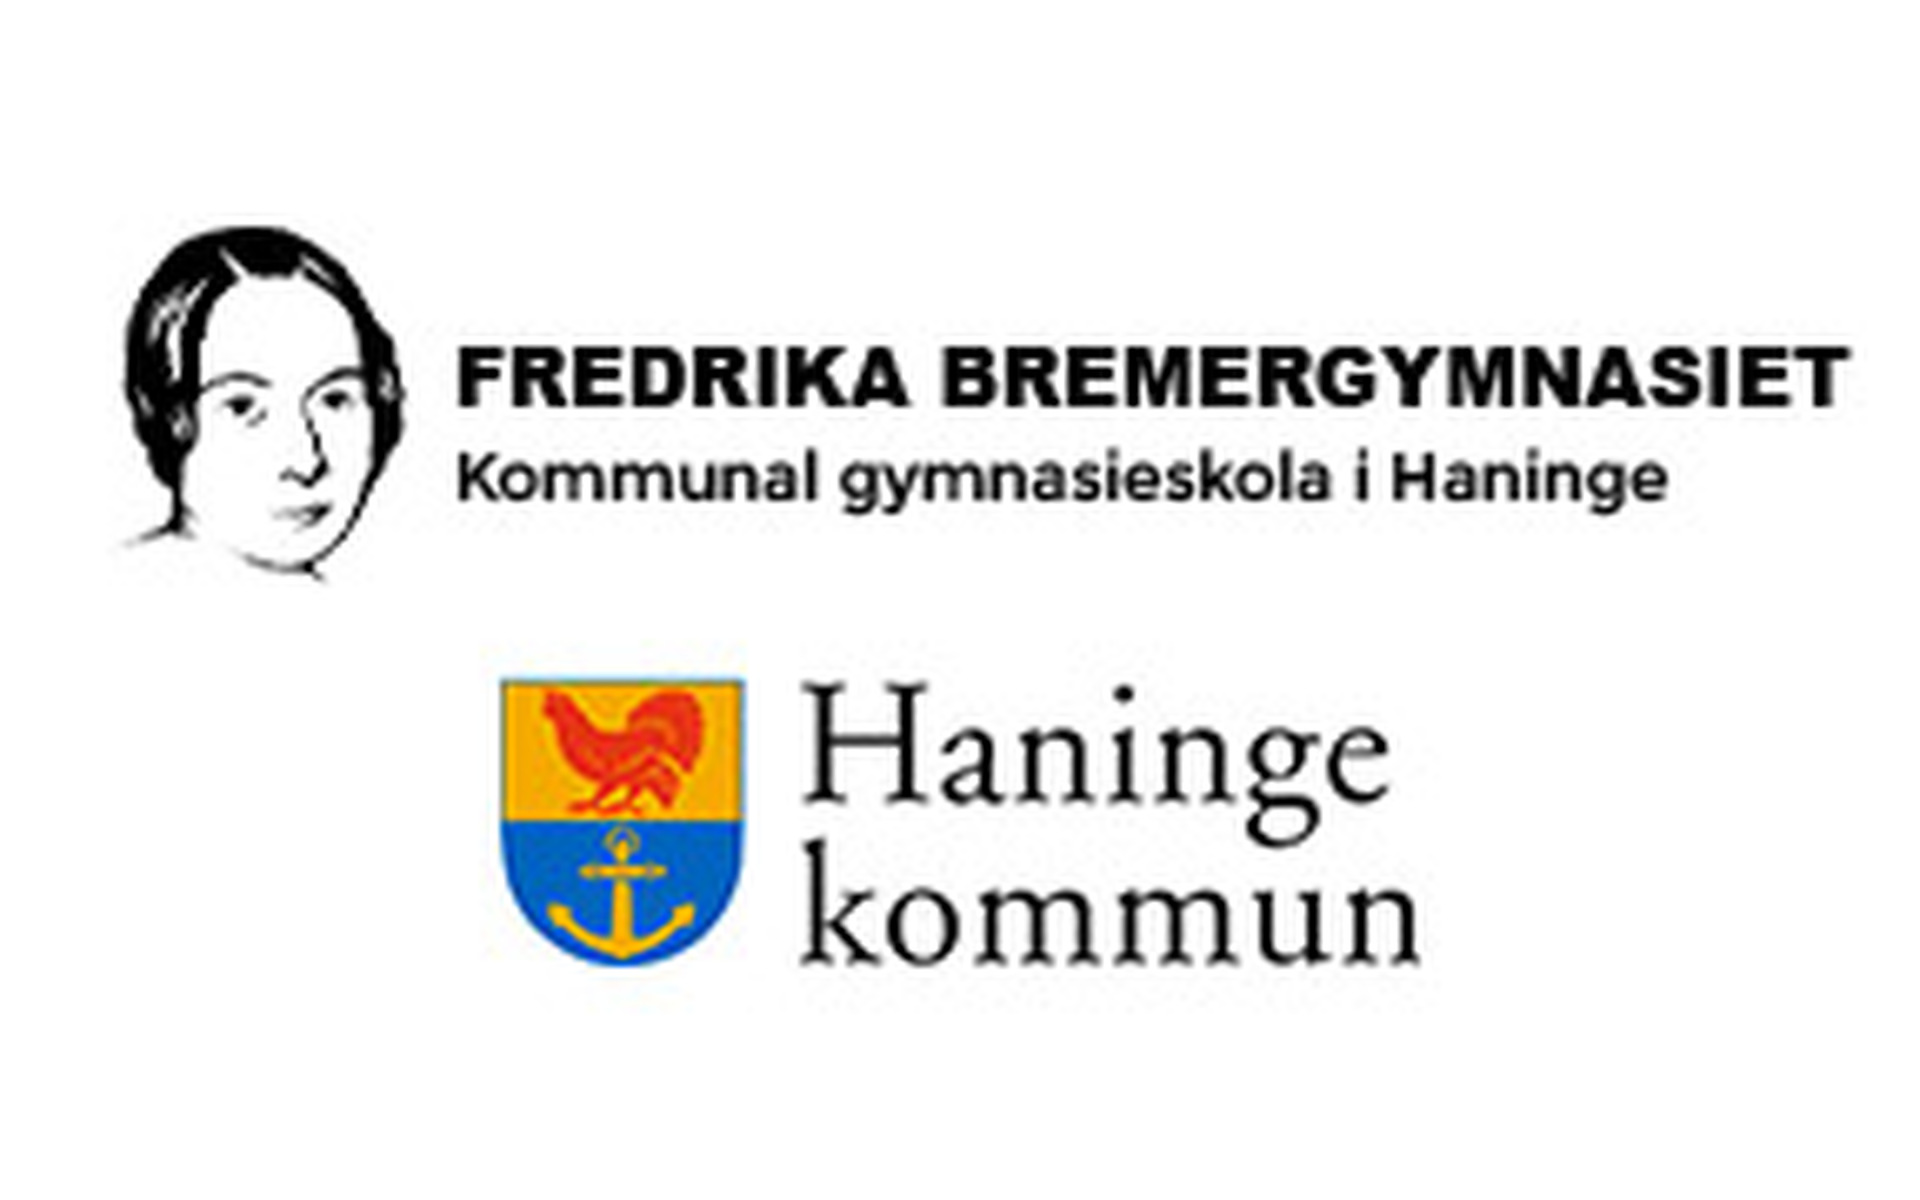 Fredrika Bremergymnasiet